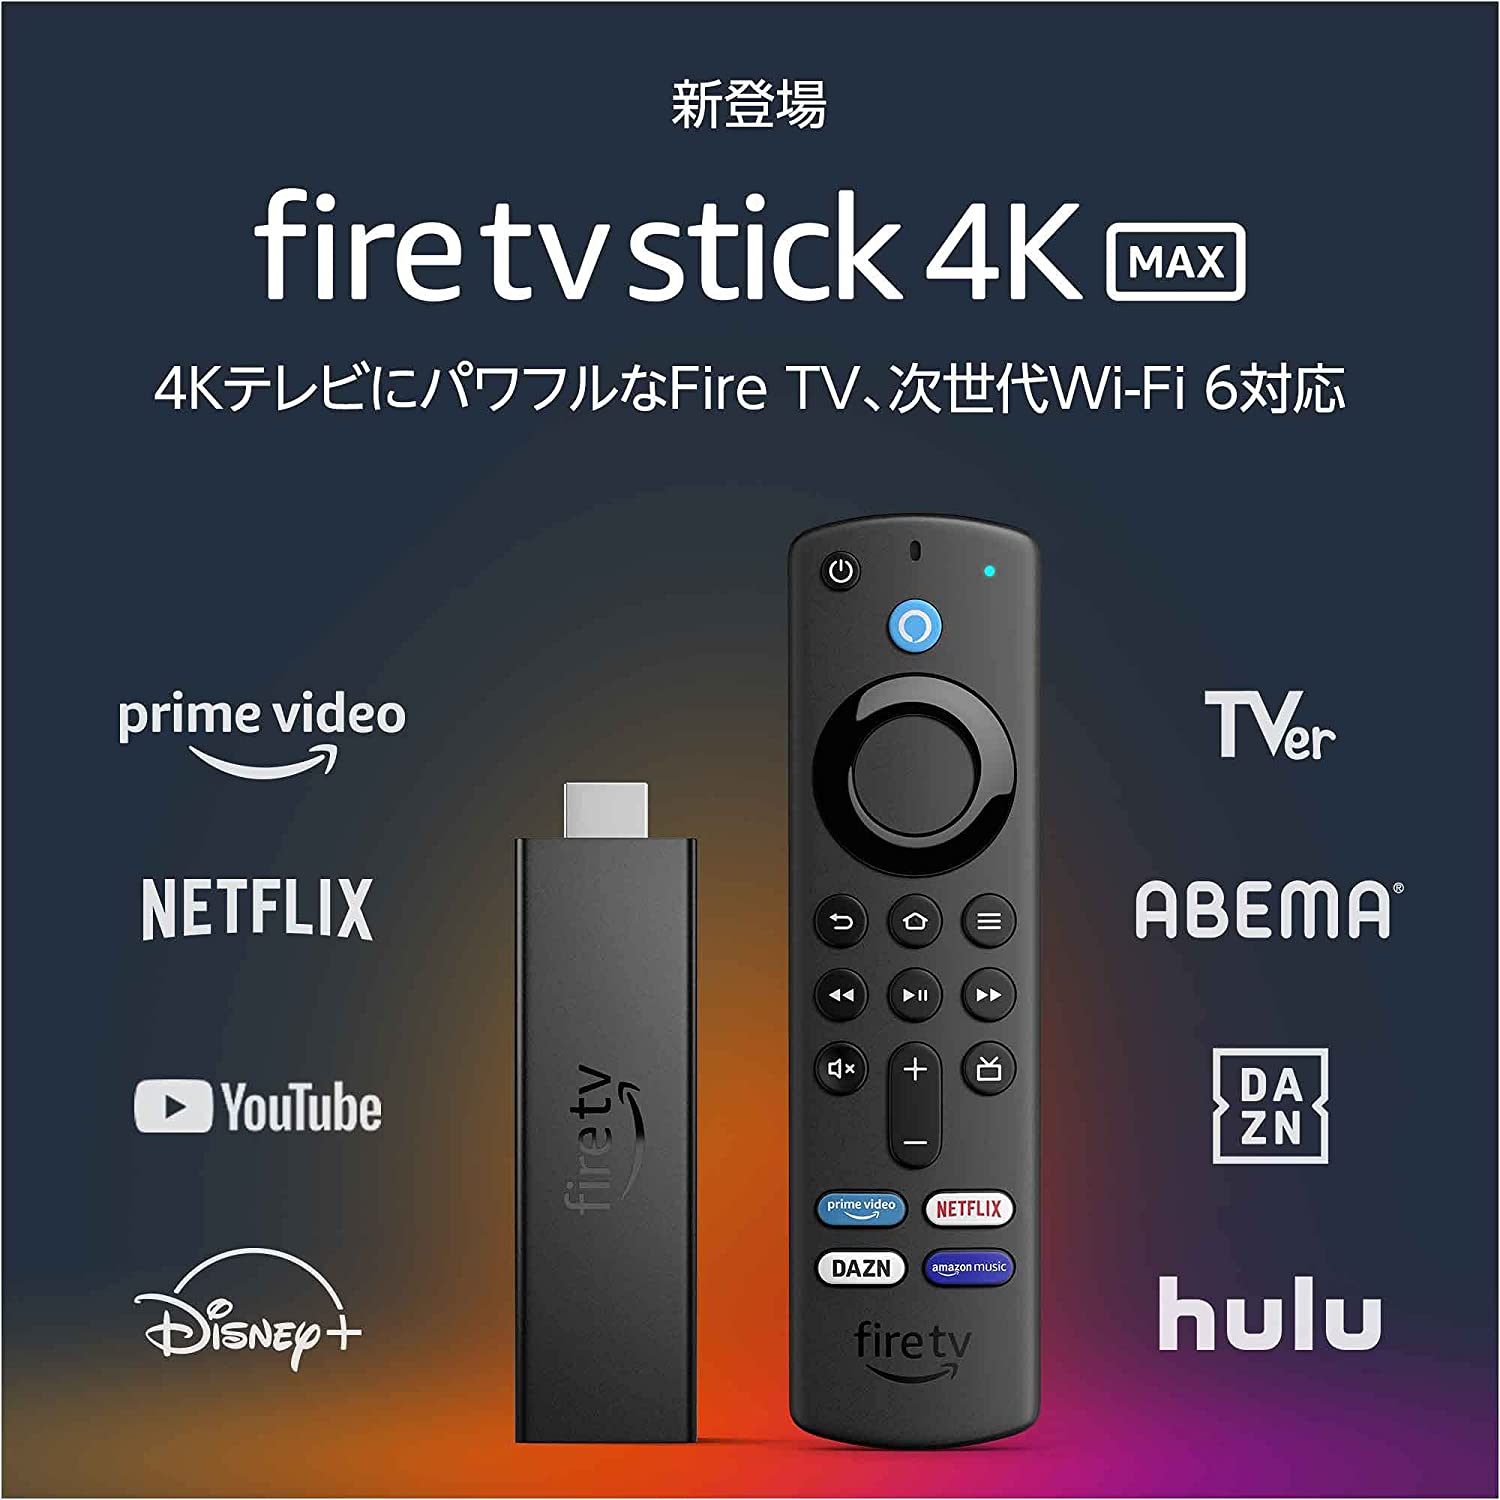 最終日【Amazonタイムセール祭り】Fire TV Stick 2980円/4K Maxは2800円オフ/肉球マークの10000mAhモバイルバッテリーが1309円など～ポイント還元対象1万円に届かないなら消耗品で買い合わせを